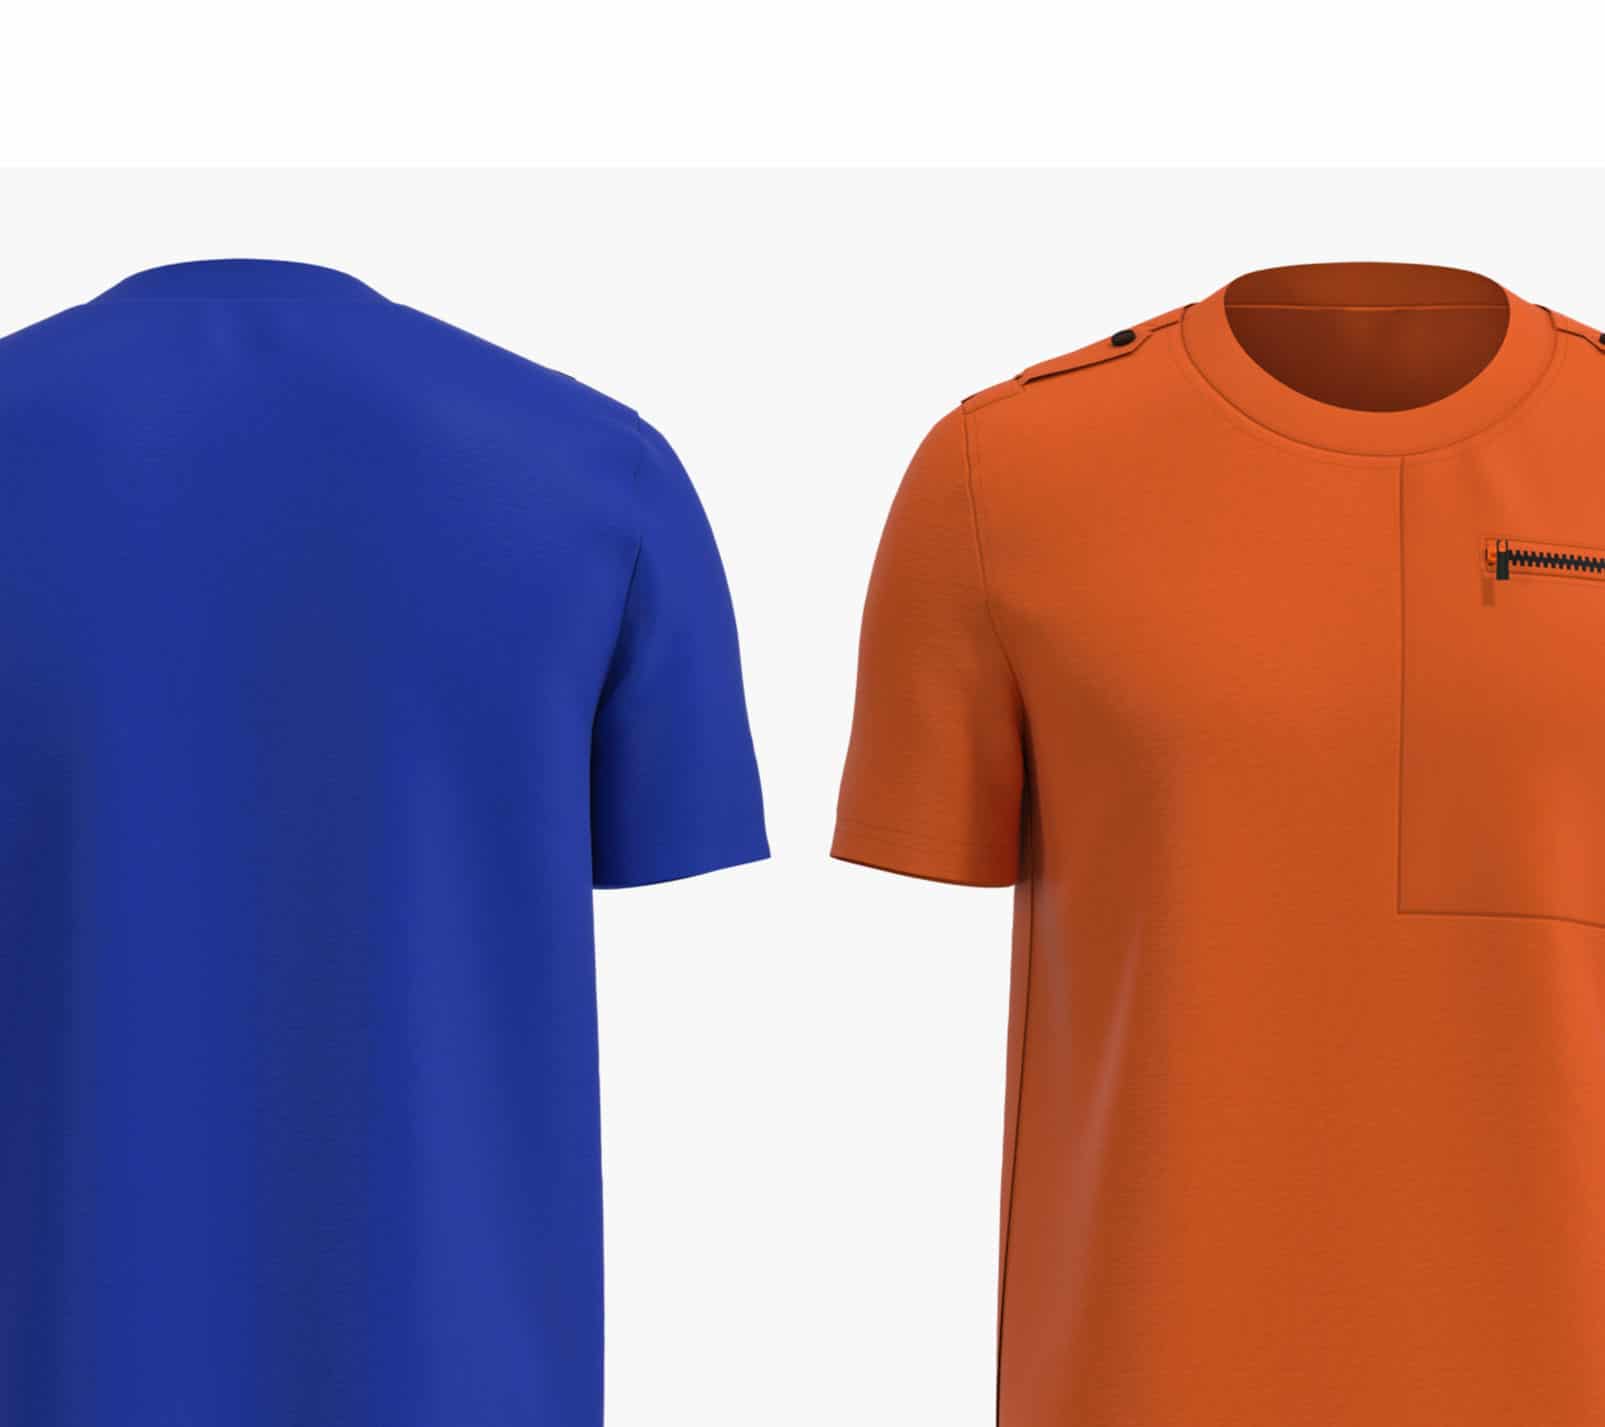 Blue & Orange Shirts